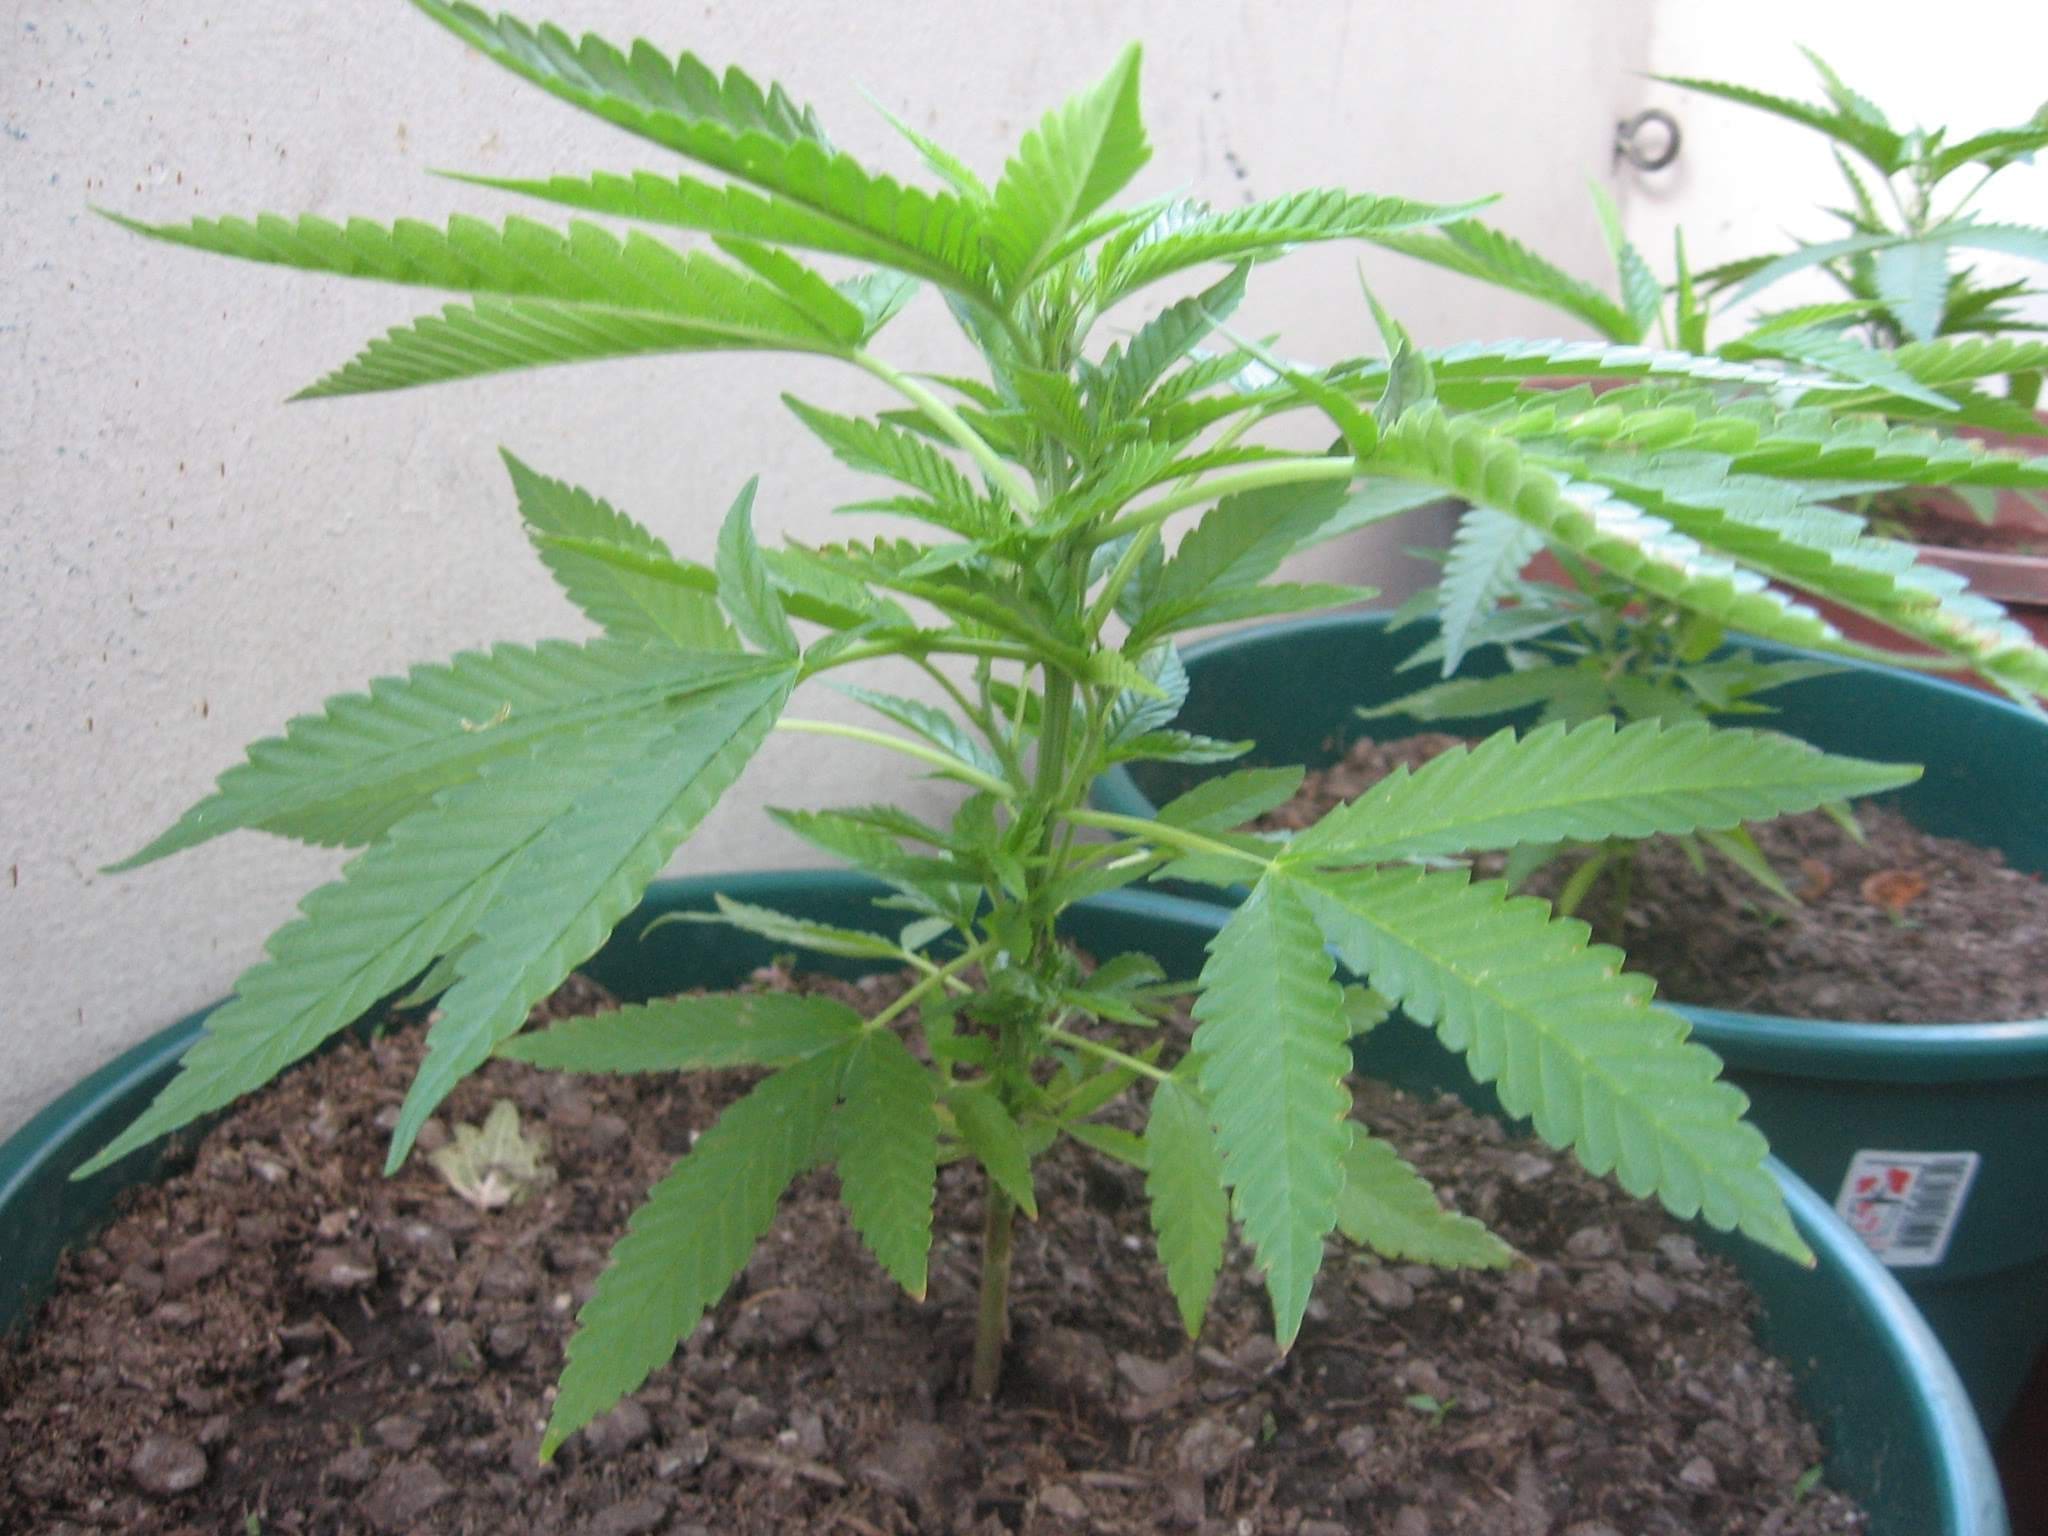 Cannabis in vegetative stage - week 4